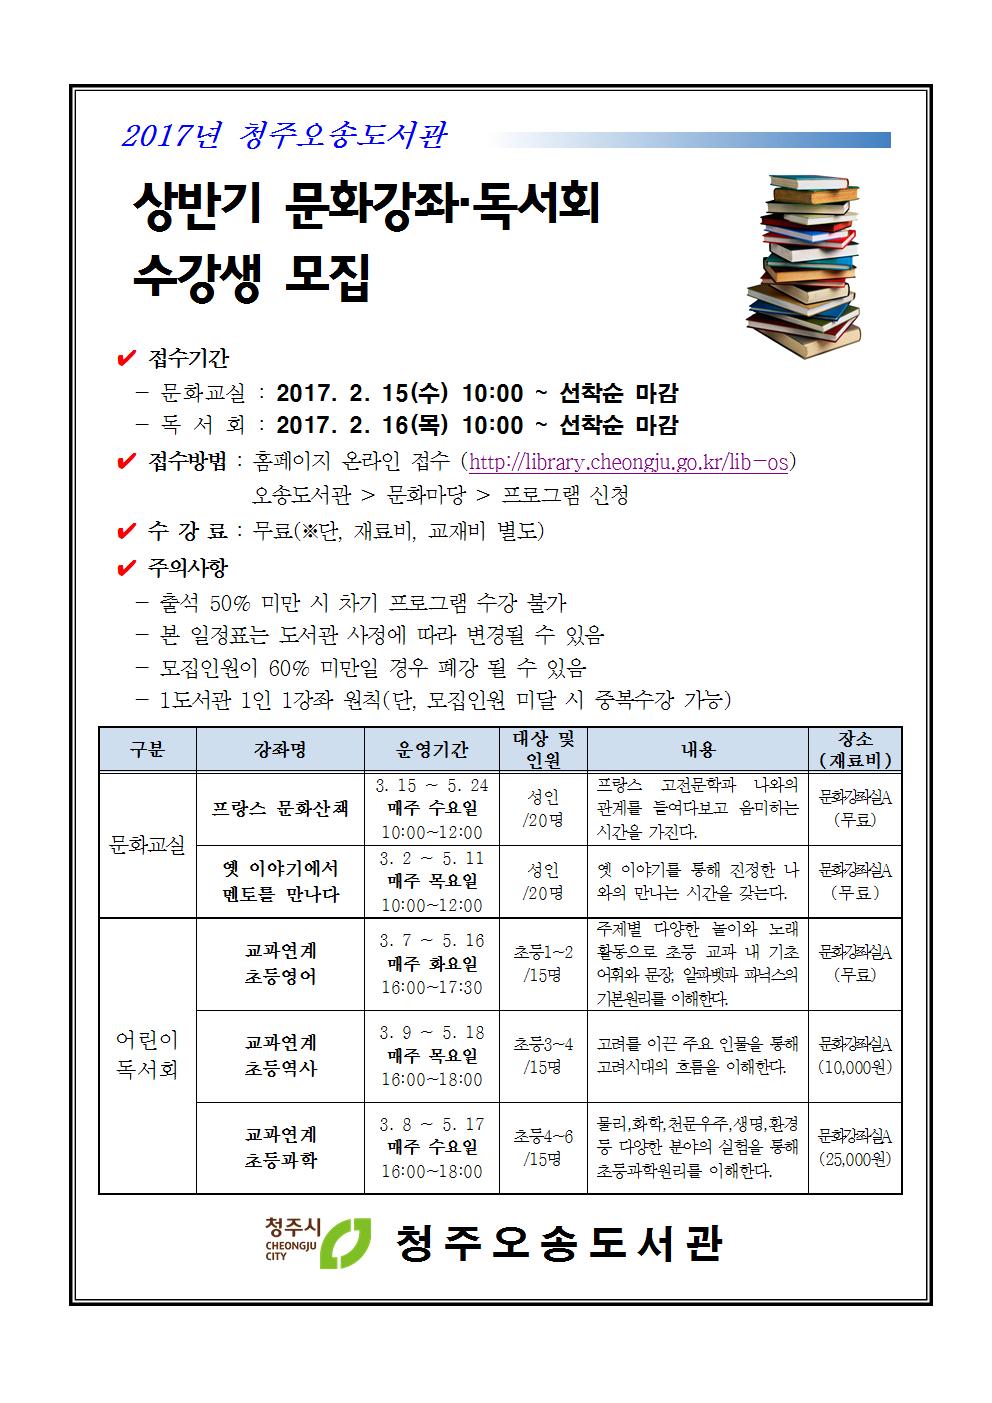 청주오송도서관 2017년 상반기 문화강좌 및 독서회 수강생 모집